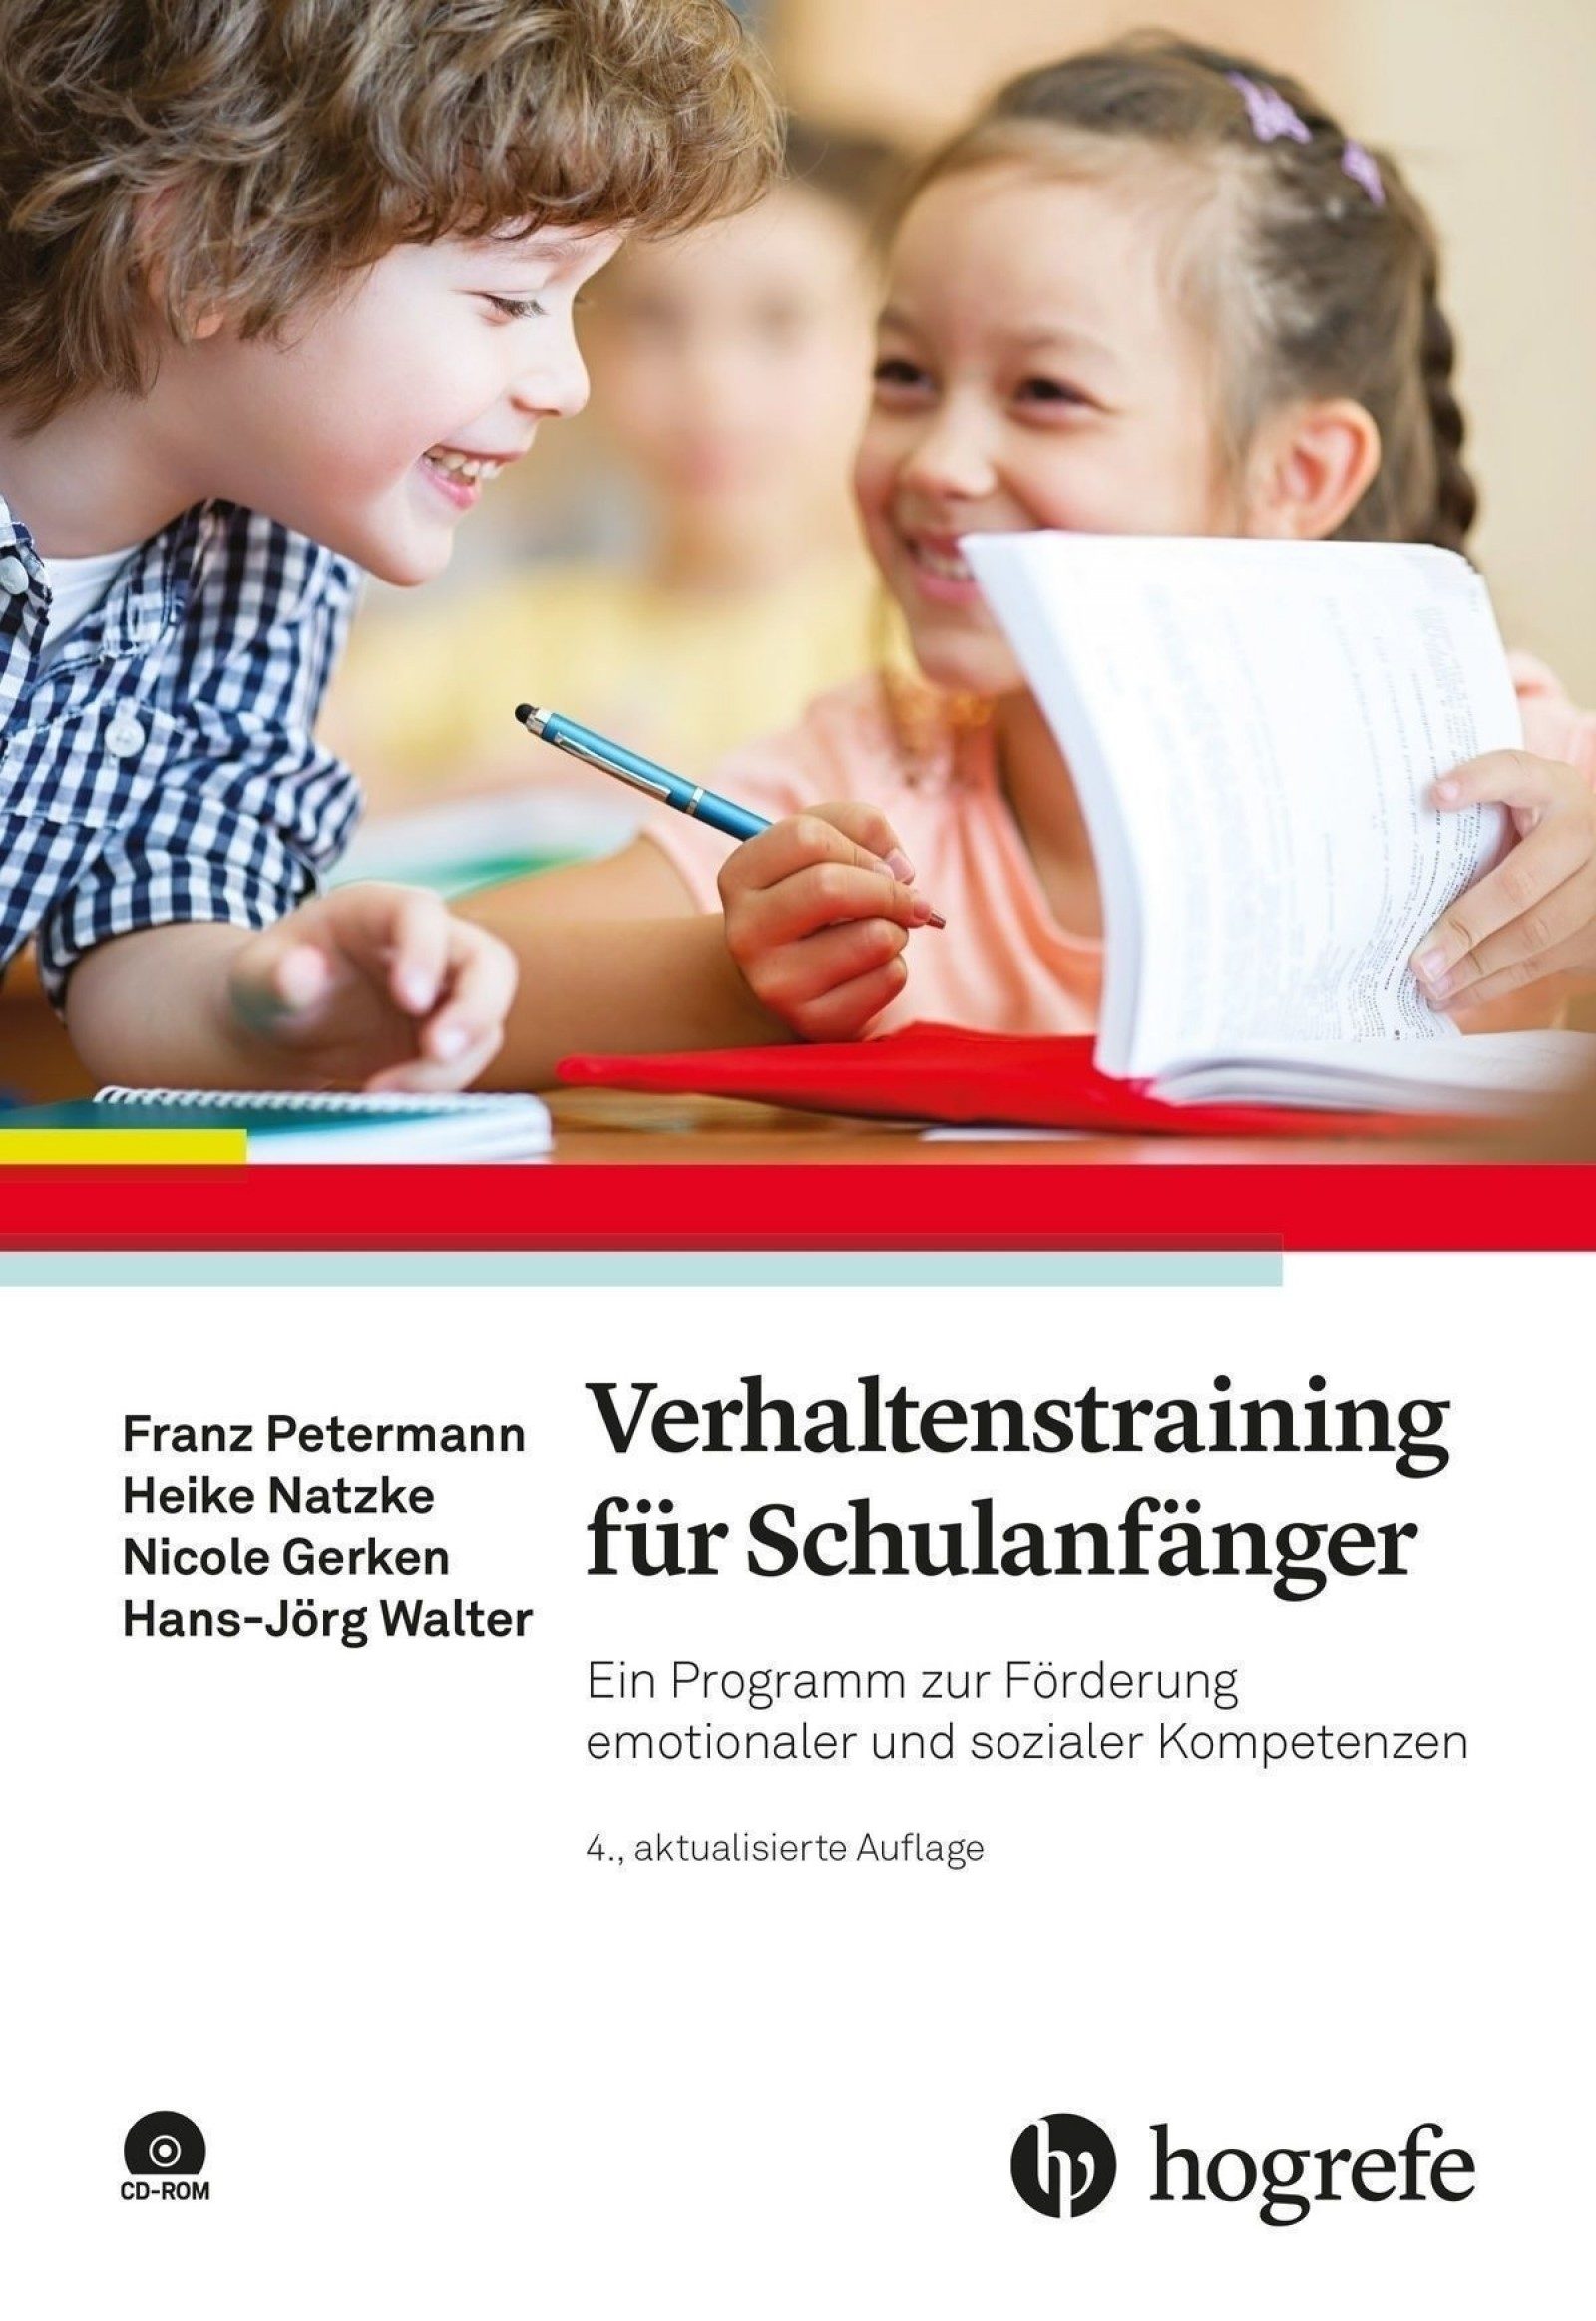 Verhaltenstraining für Schulanfänger - Fortbildung zur/zum TrainerIn (Kurs: Ibbenbüren-163)